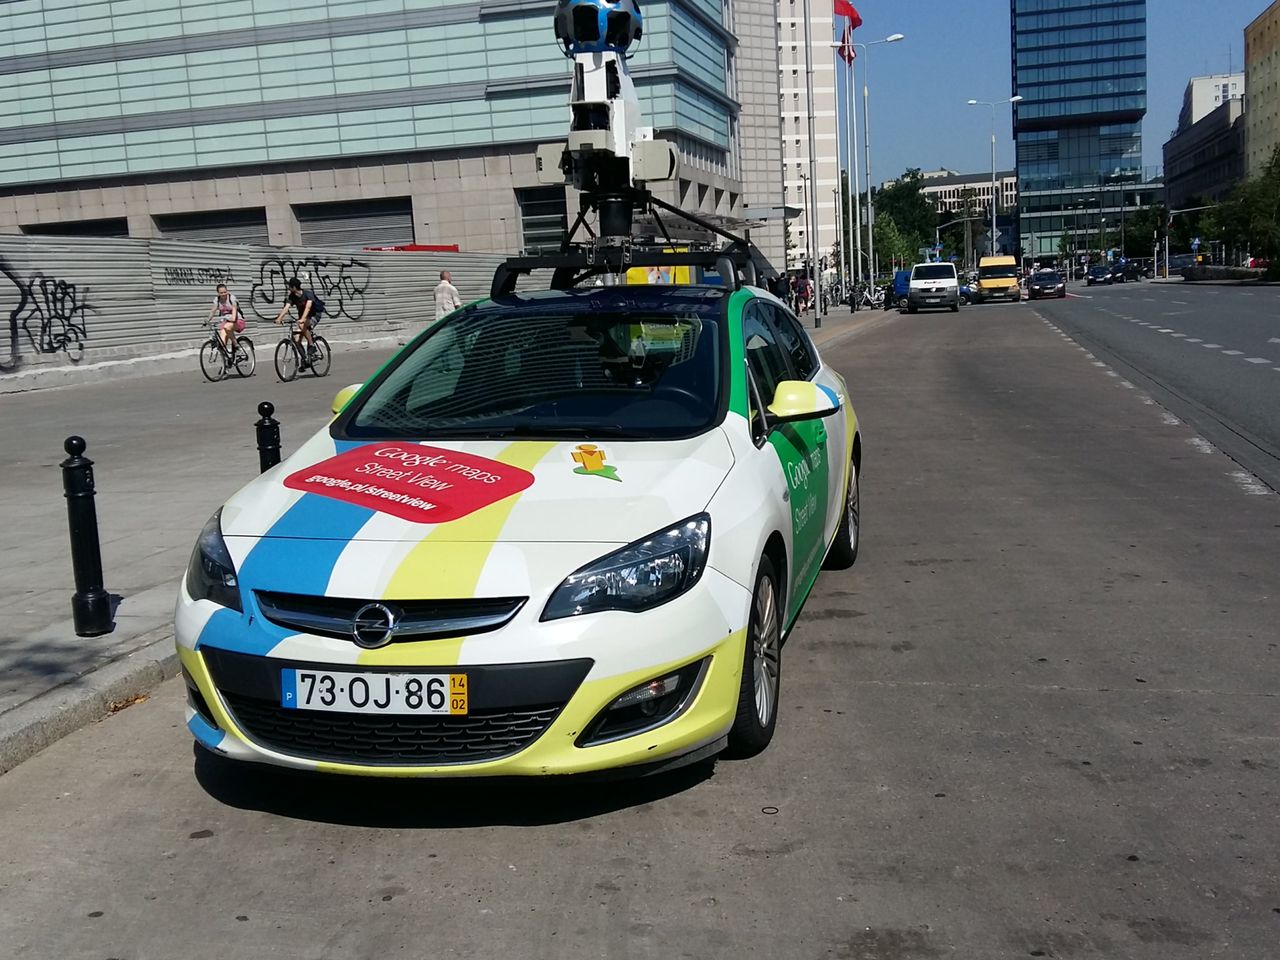 Samochód Google'a wyjeżdża robić zdjęcia. Oglądaliśmy go z bliska